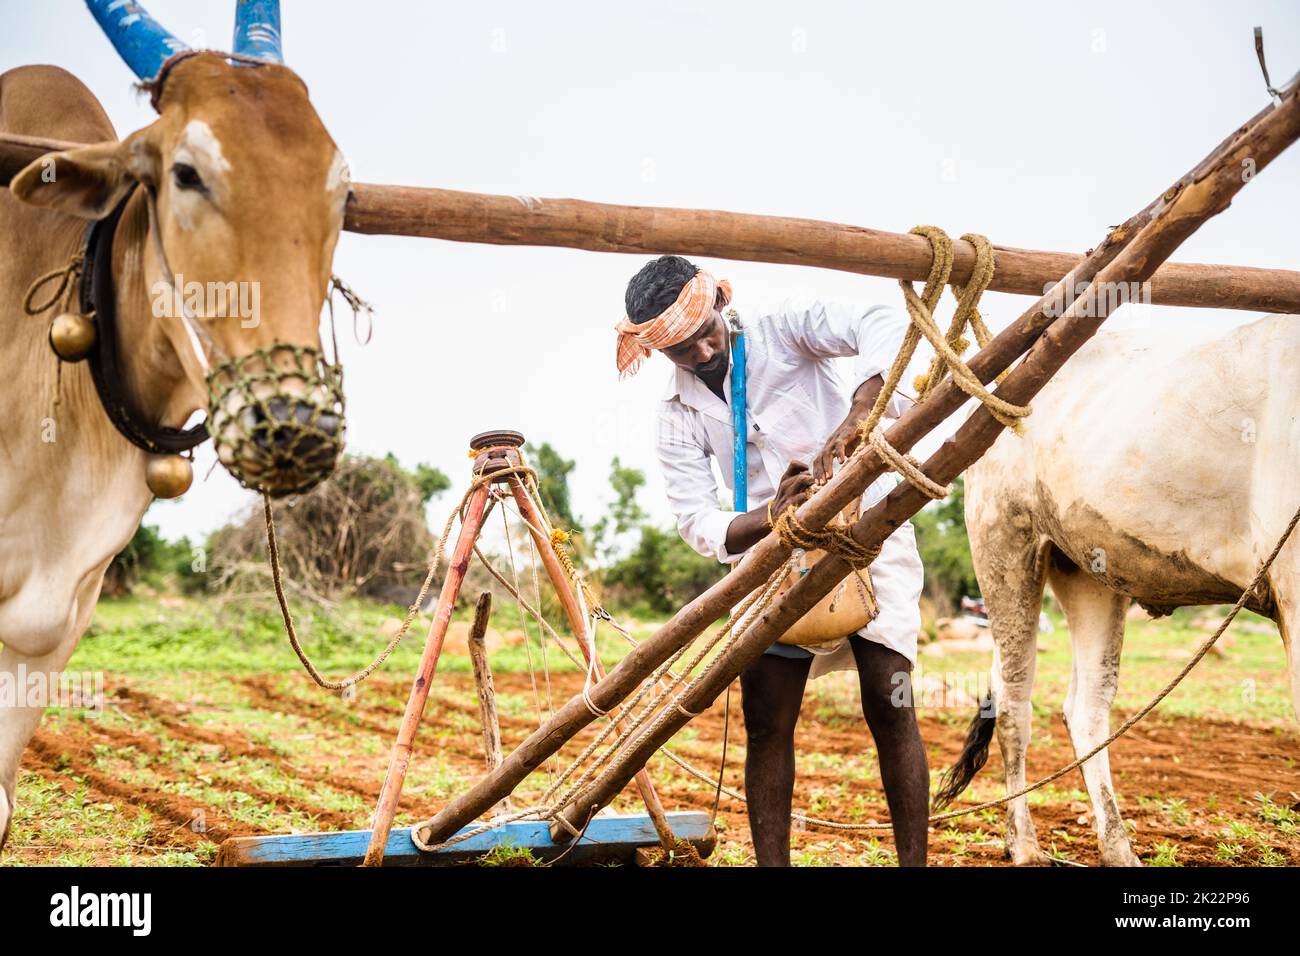 Agriculteur serrant la corde de charrue tout en se préparant au travail sur les terres agricoles en utilisant des boeufs - concept de la forme traditionnelle de l'agriculture, l'inde rurale et le village Banque D'Images